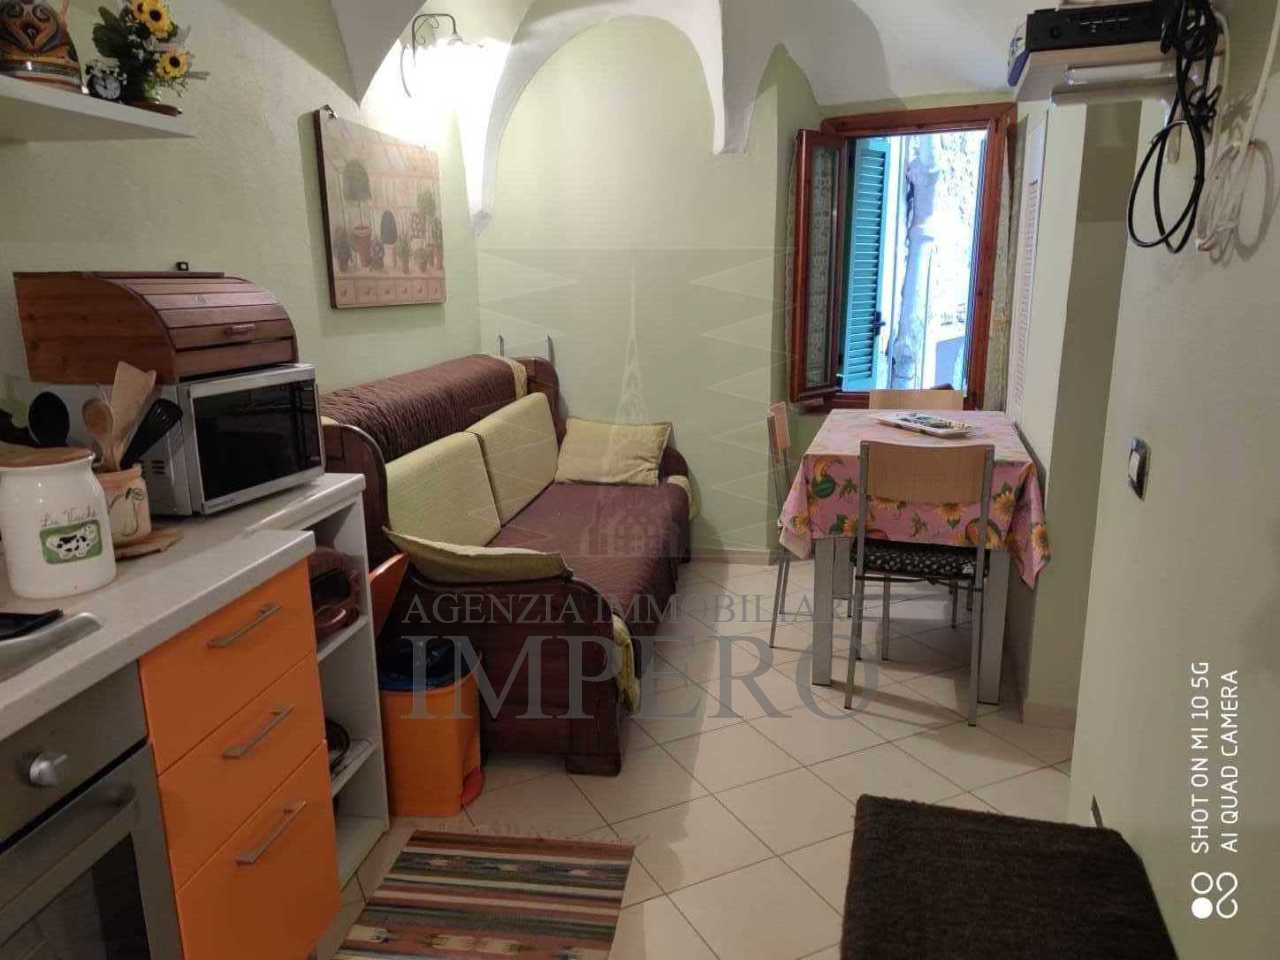 Appartamento in vendita a Soldano, 2 locali, prezzo € 75.000 | PortaleAgenzieImmobiliari.it